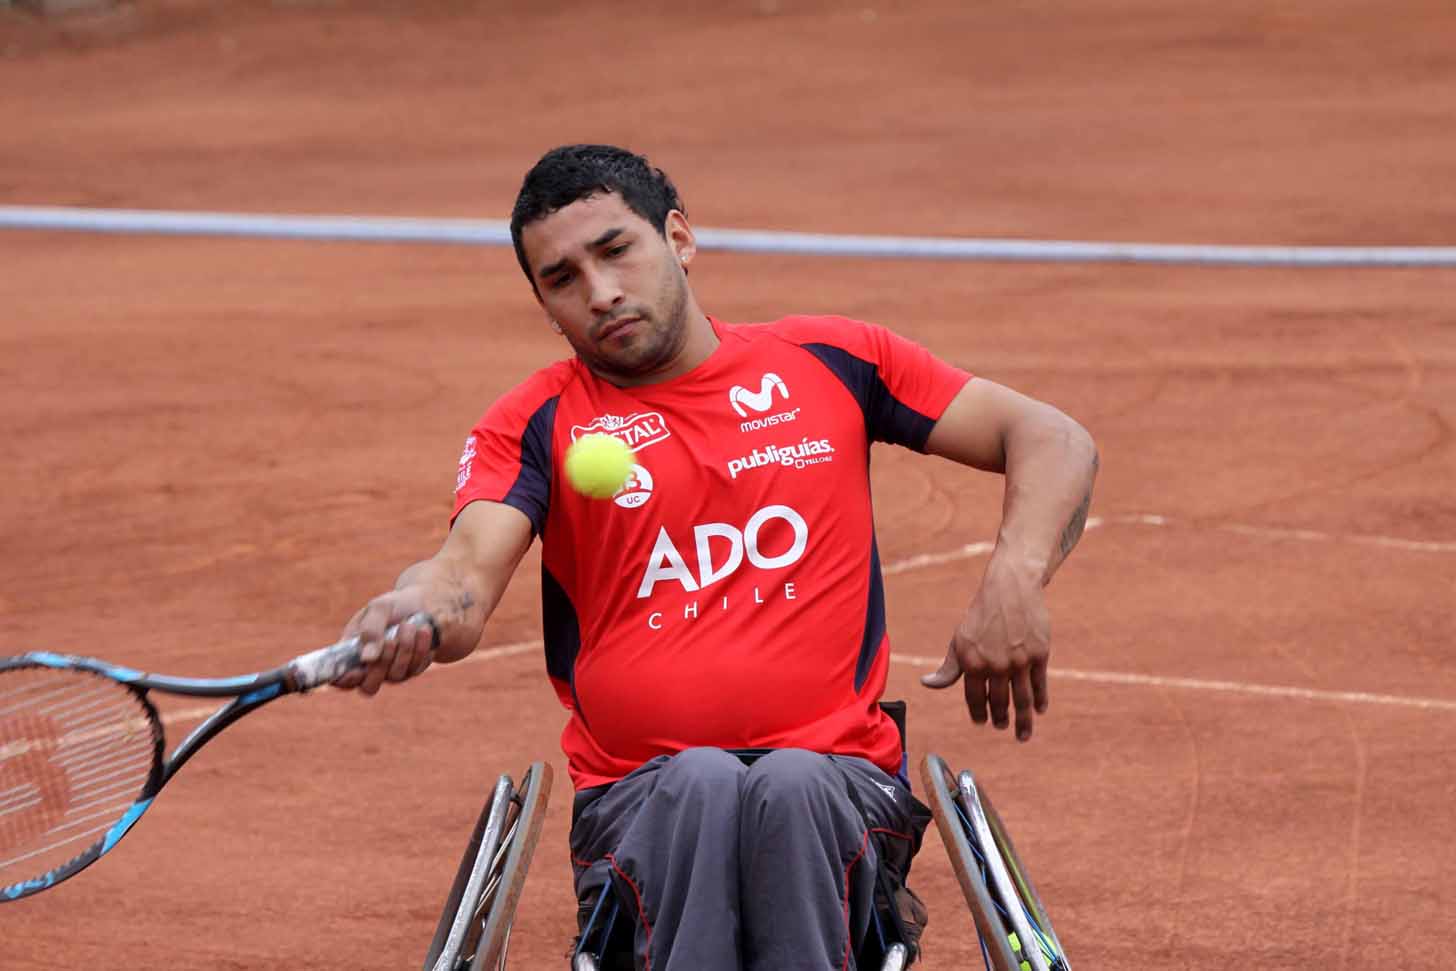 Después de una brillante trayectoria, Robinson Méndez se retira del tenis paralímpico